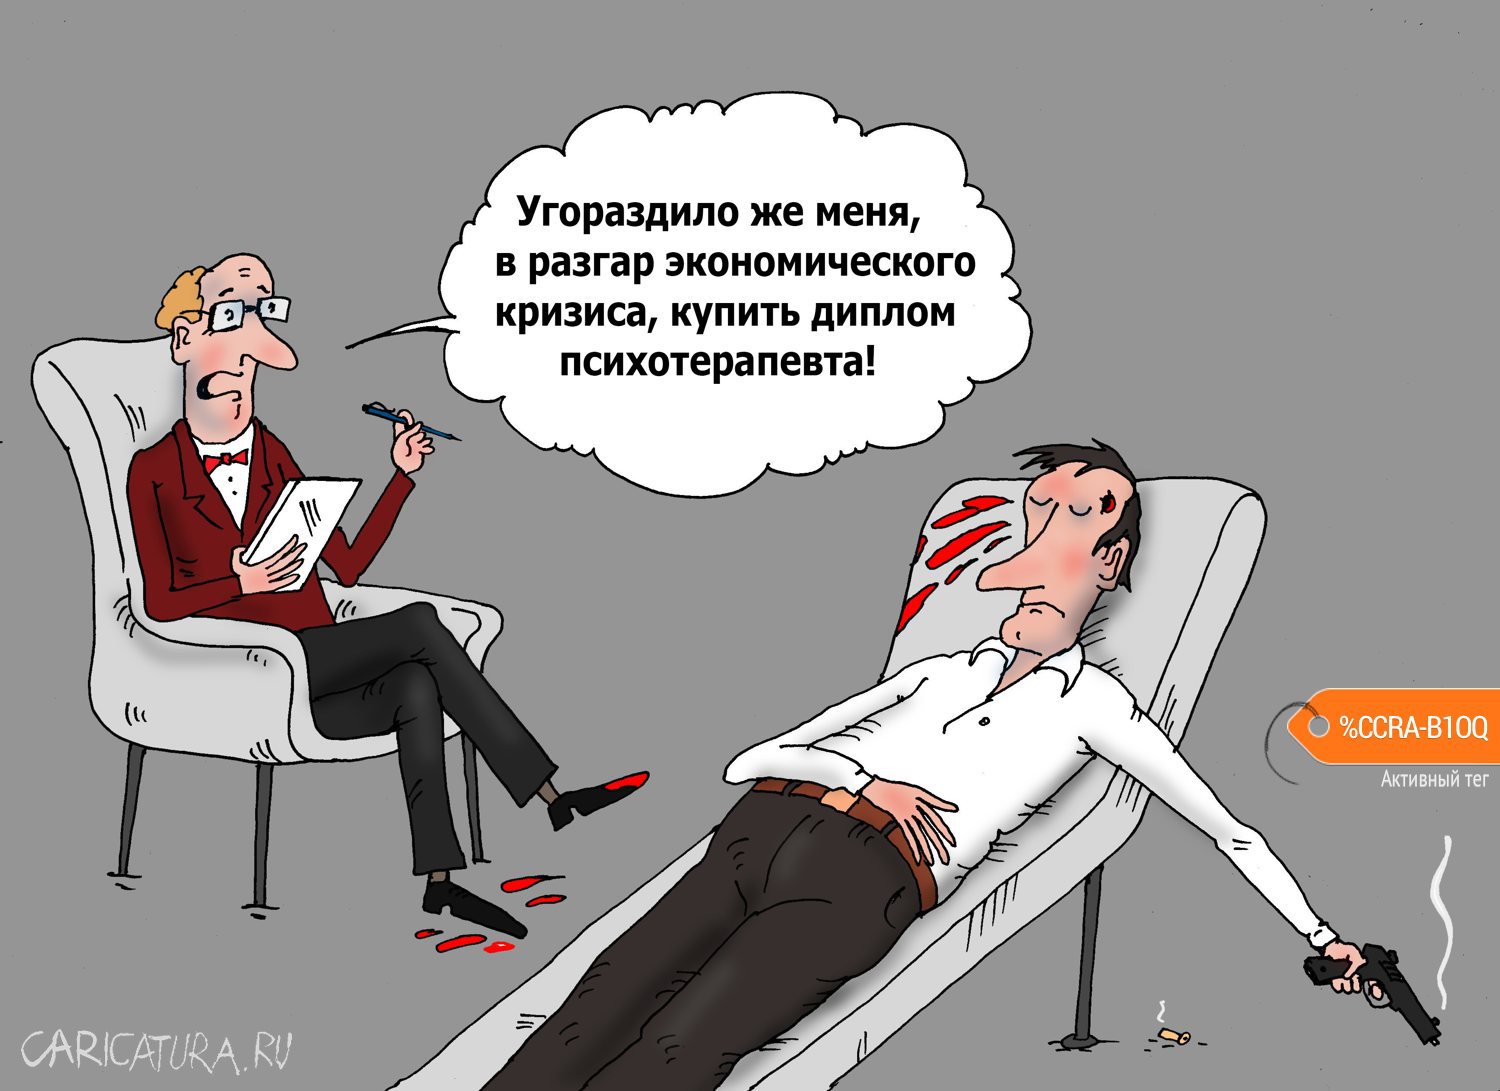 Карикатура "Психотерапия", Валерий Тарасенко